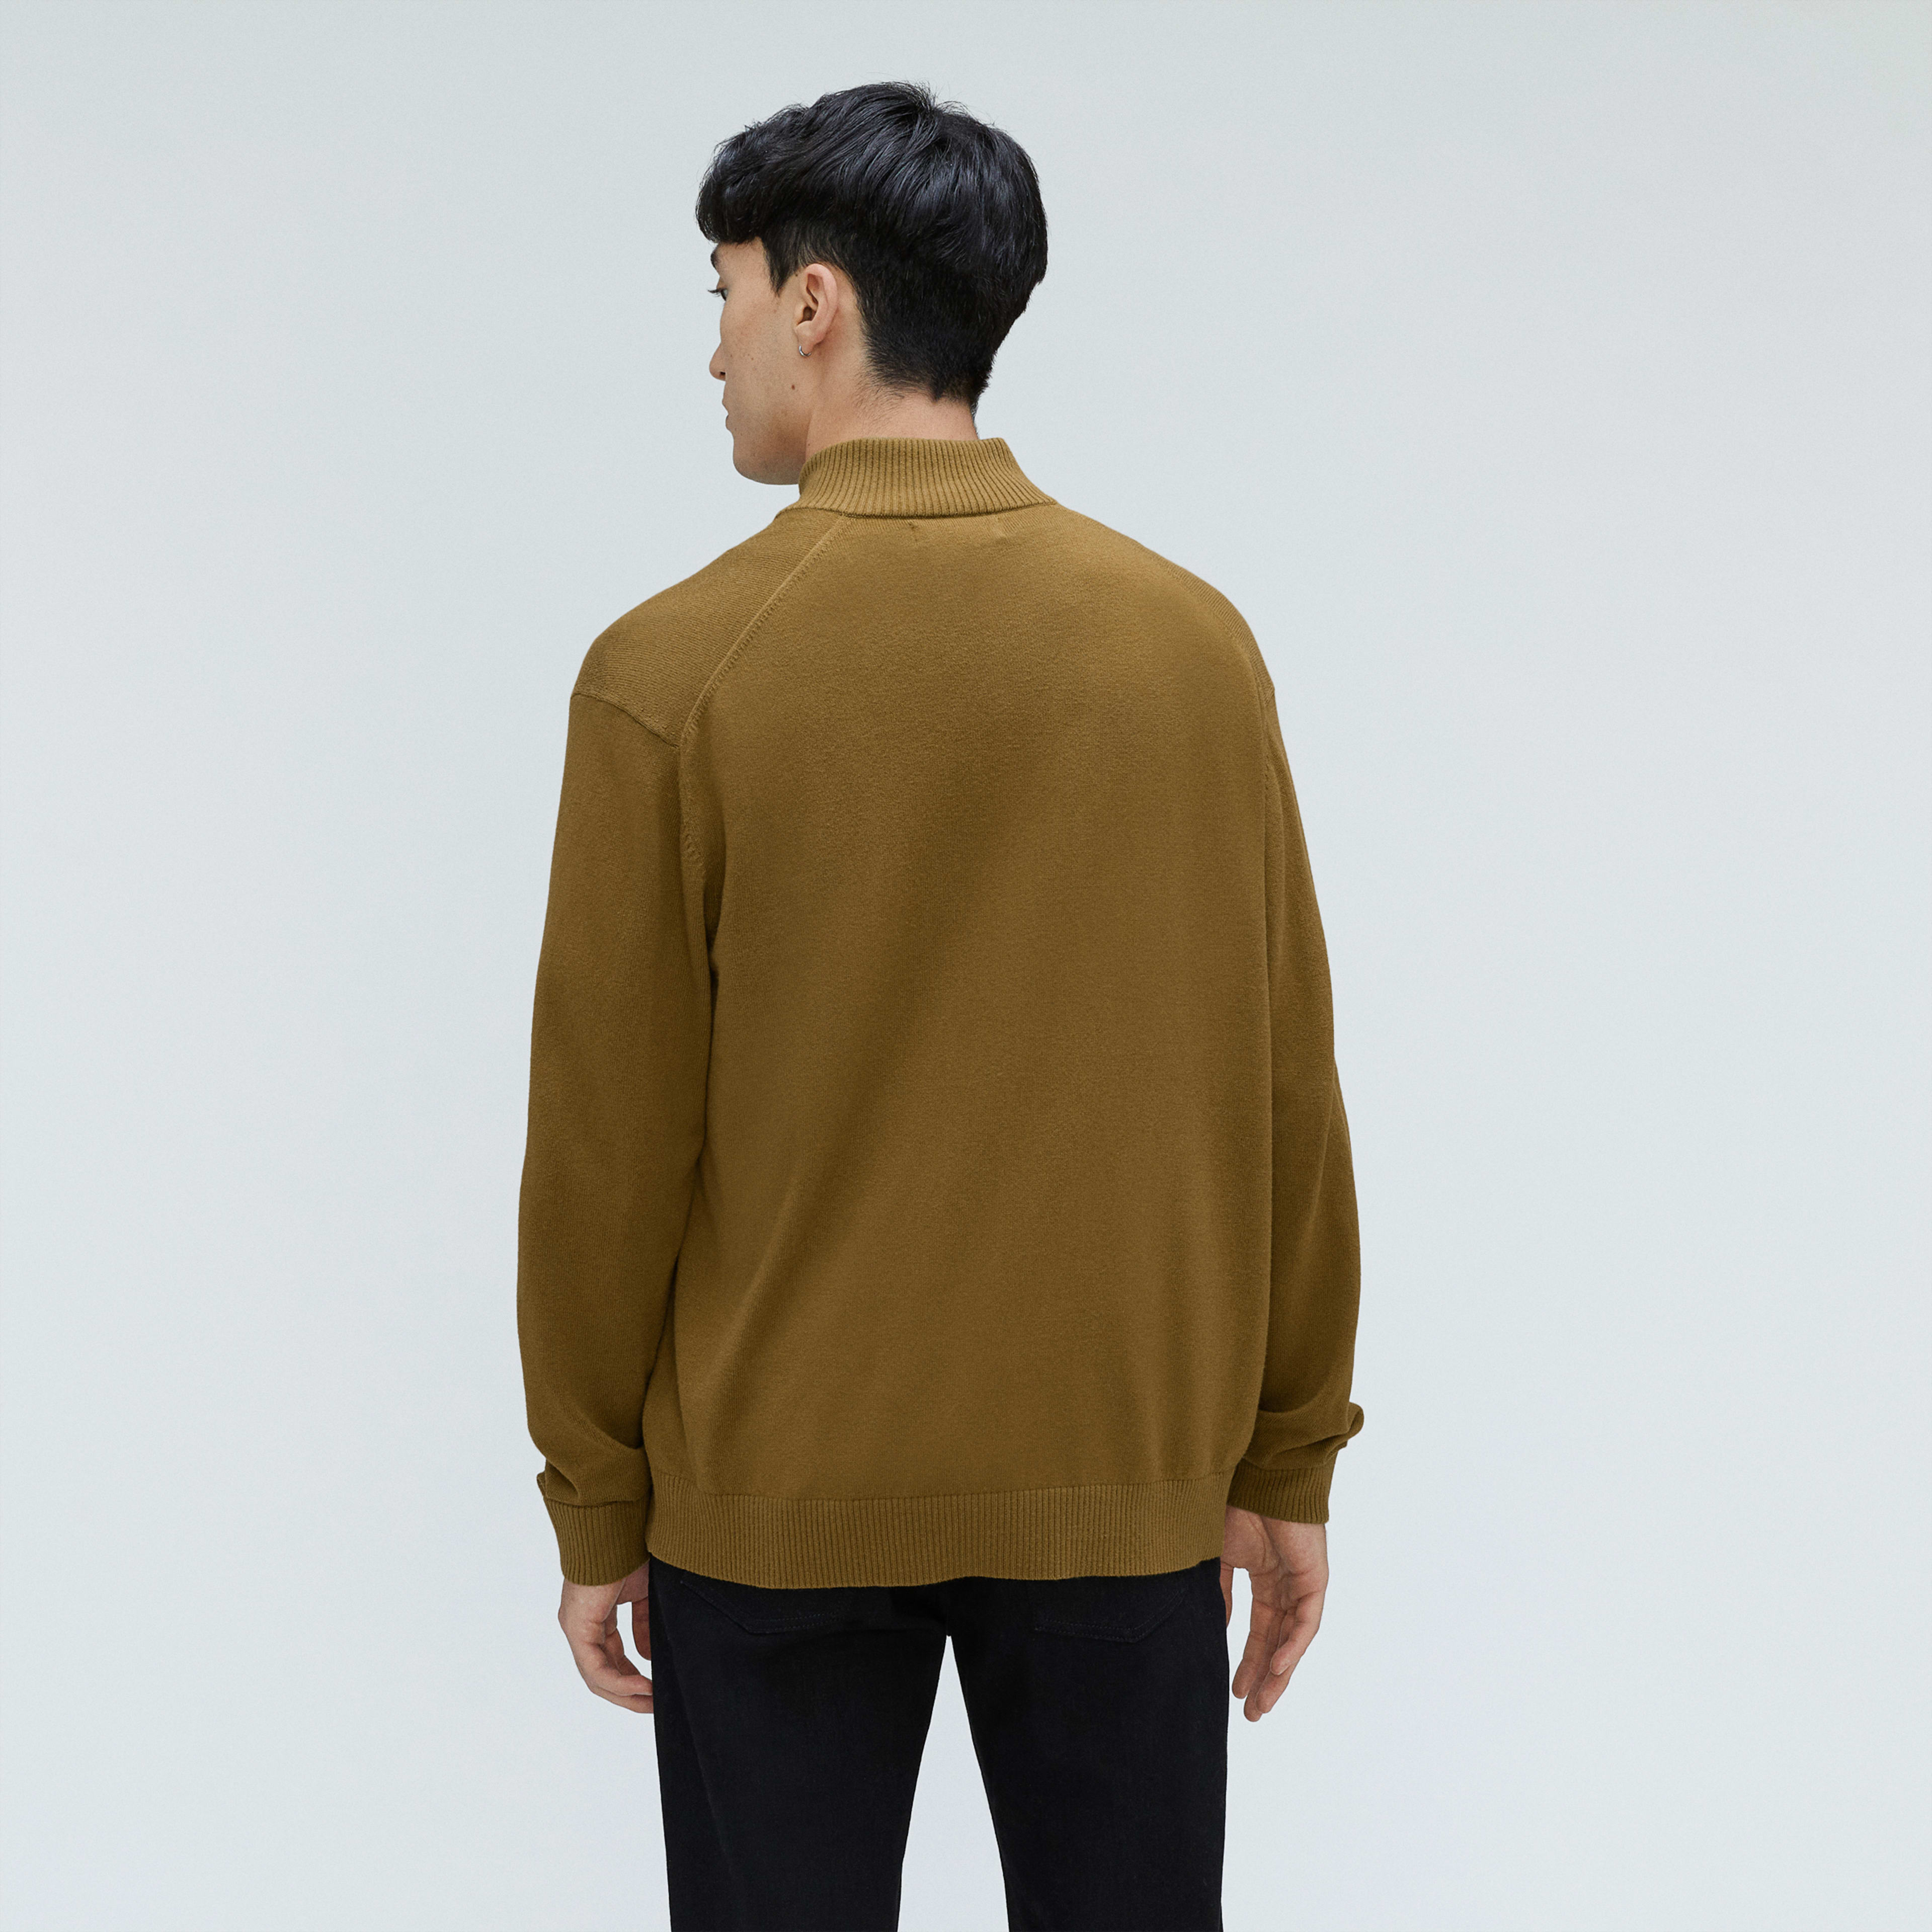 The No-Sweat Full Zip Sweater Tapenade – Everlane